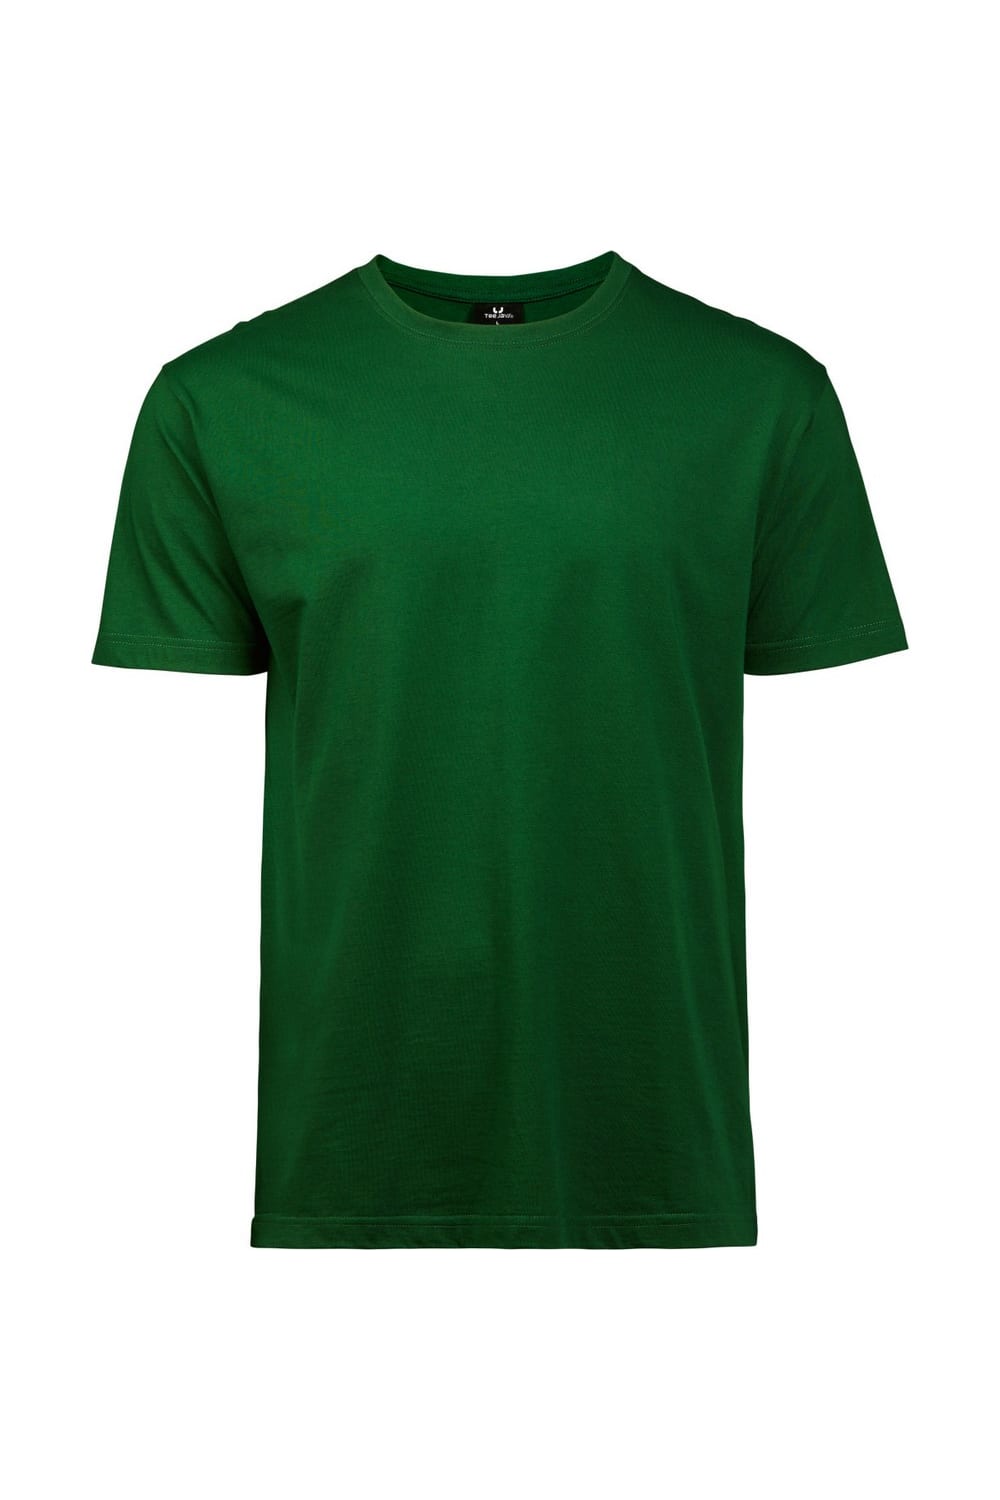 Mens Short Sleeve T-Shirt - Forest Green